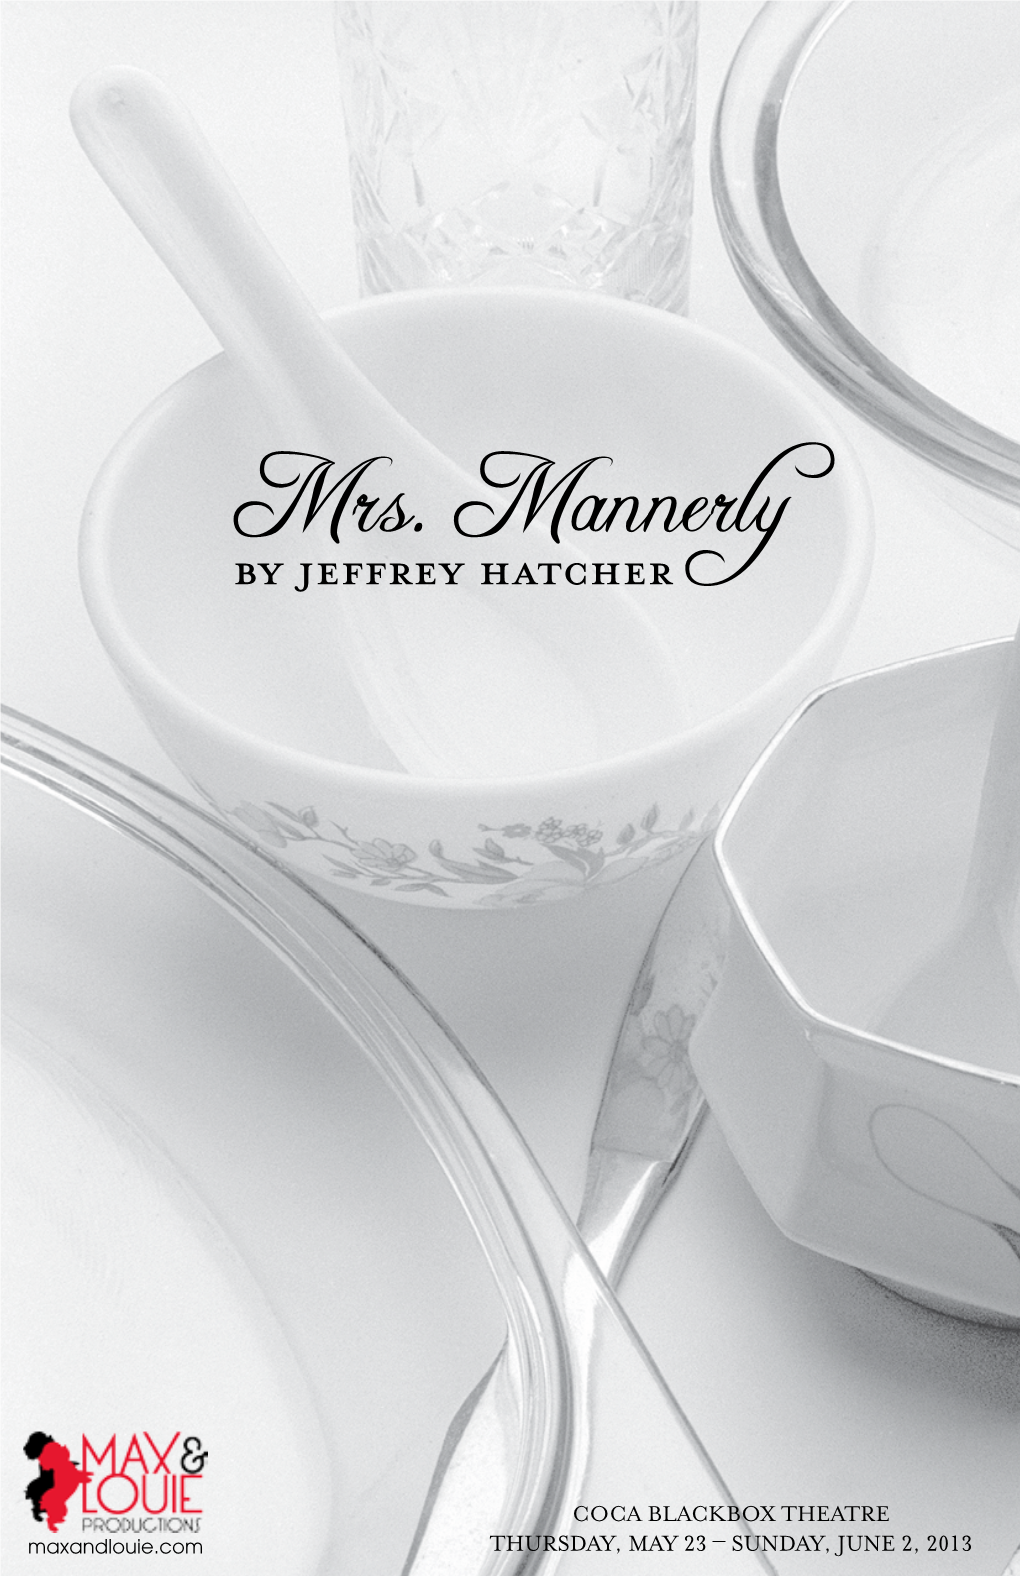 Mrs. Mannerly by Jeffrey Hatcher